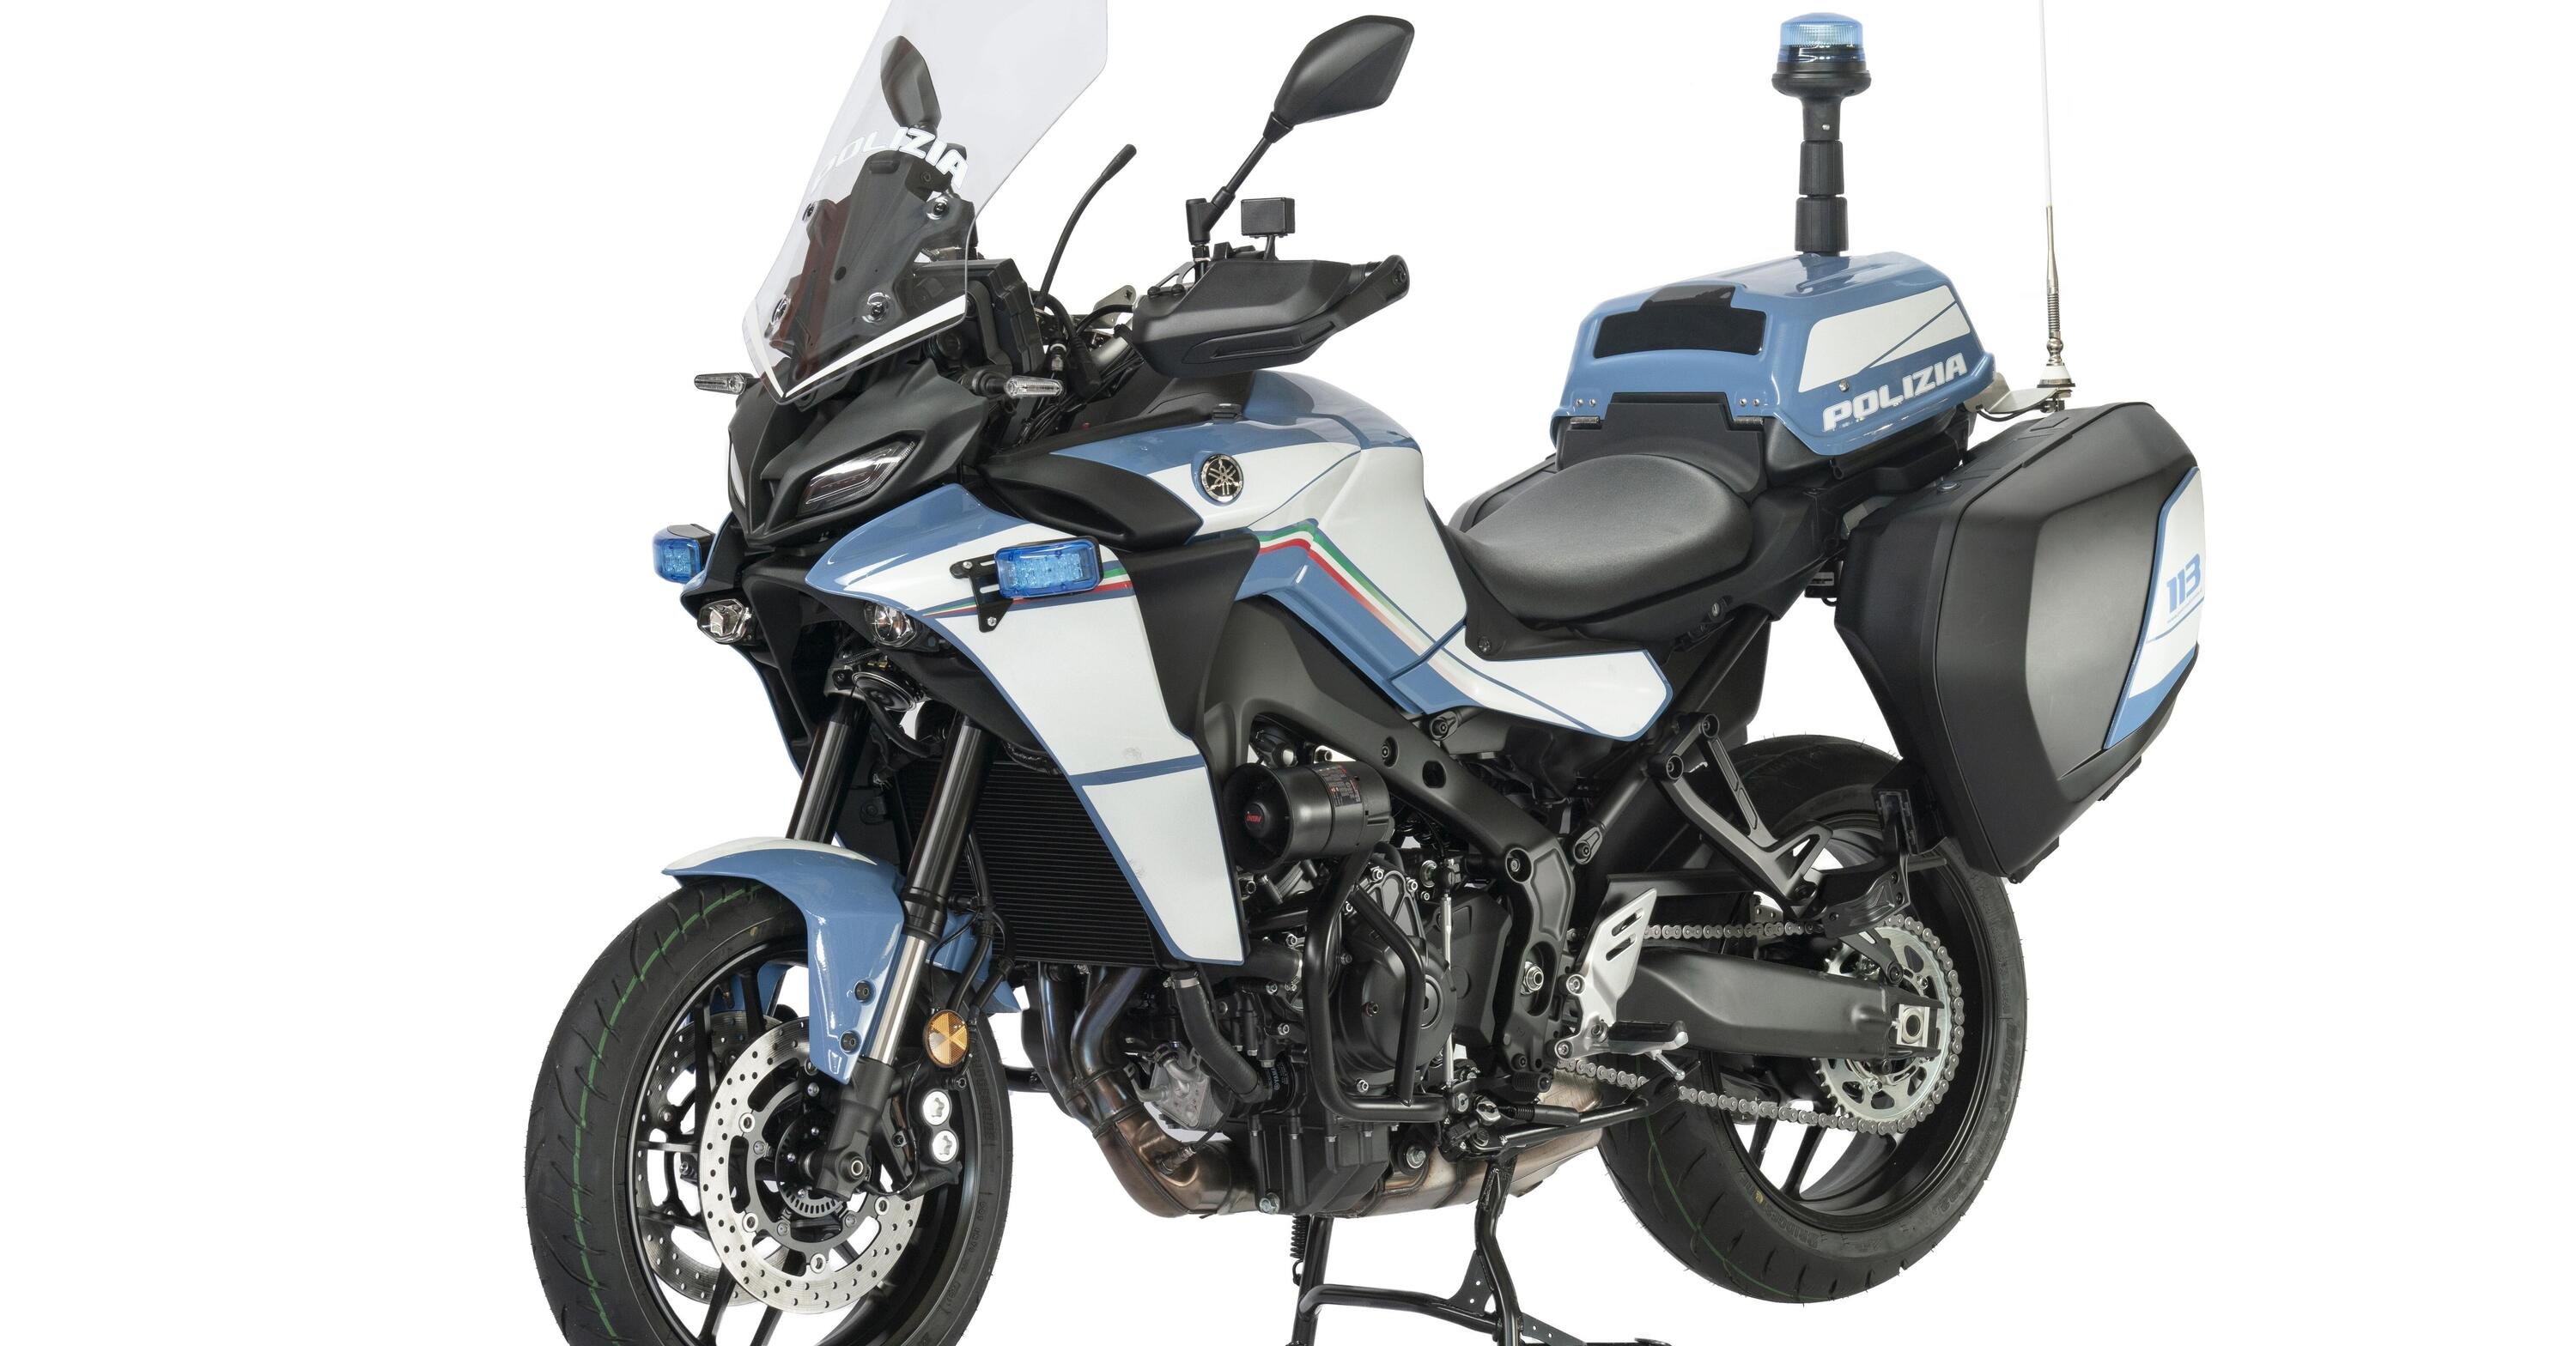 Yamaha presenta la Tracer 9 della Polizia di Stato. Una collaborazione iniziata nel 1987